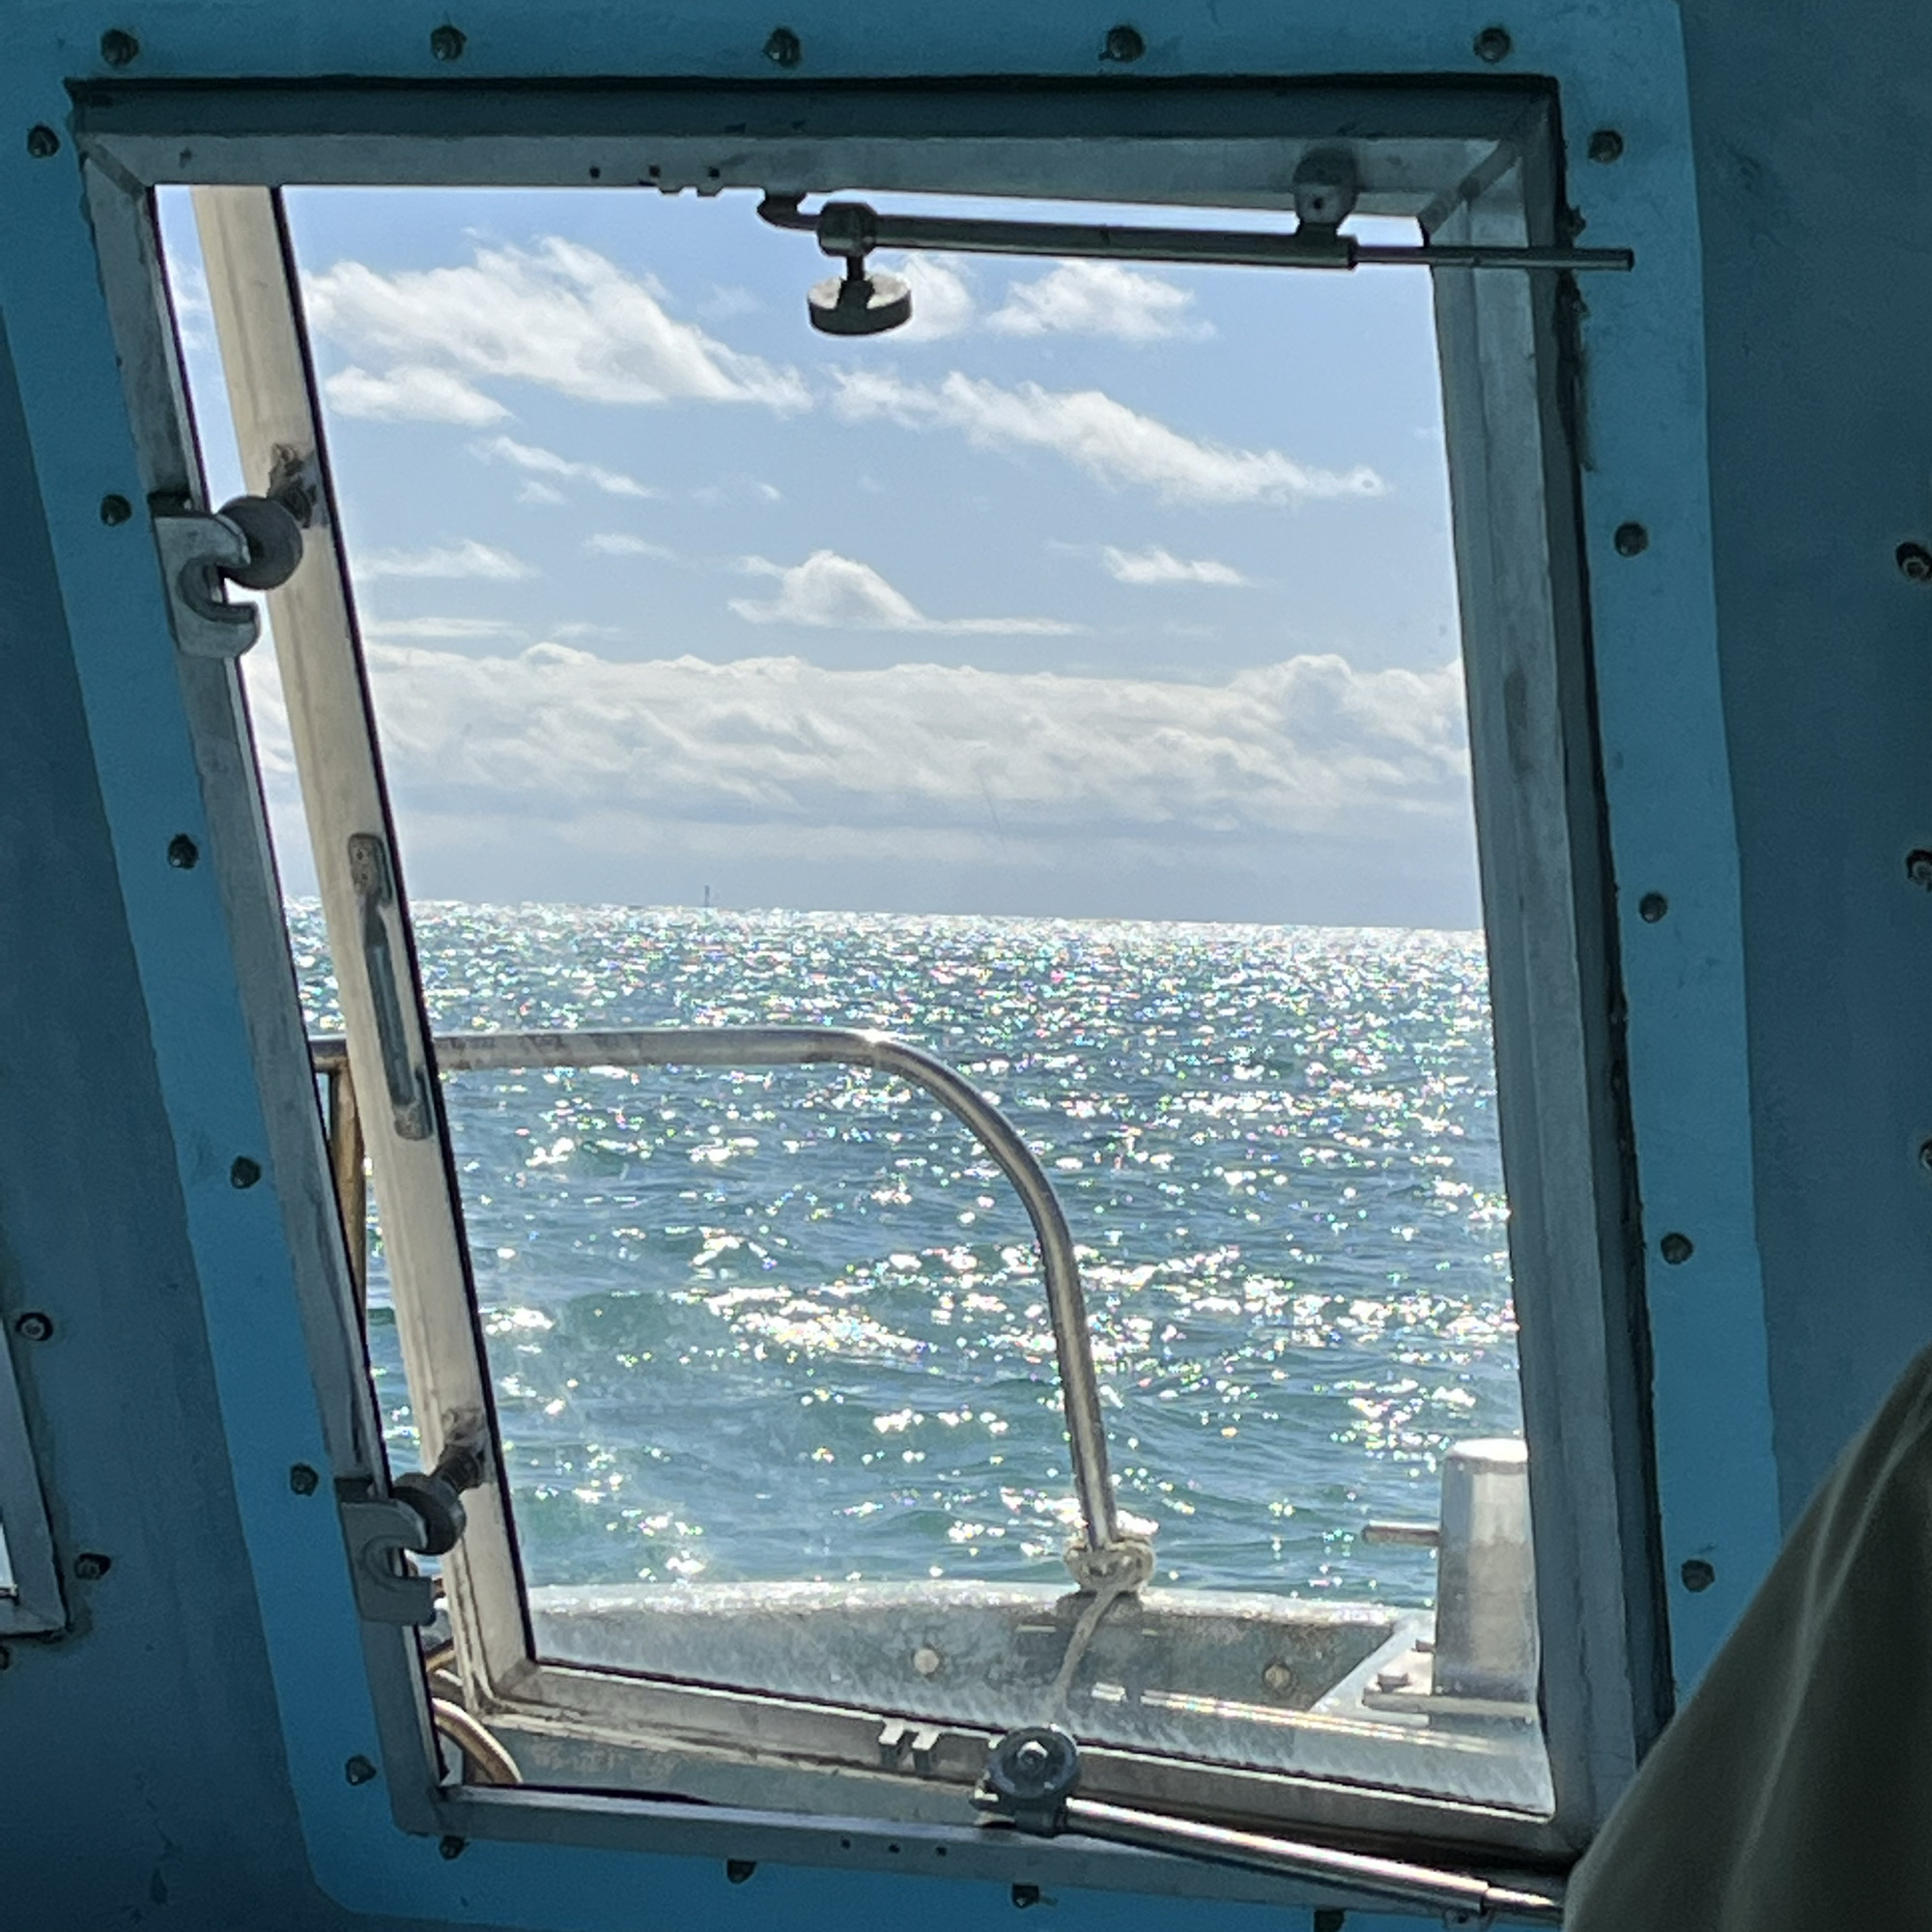 冲绳“美巴鲁海滩”的“玻璃船”怎么样?